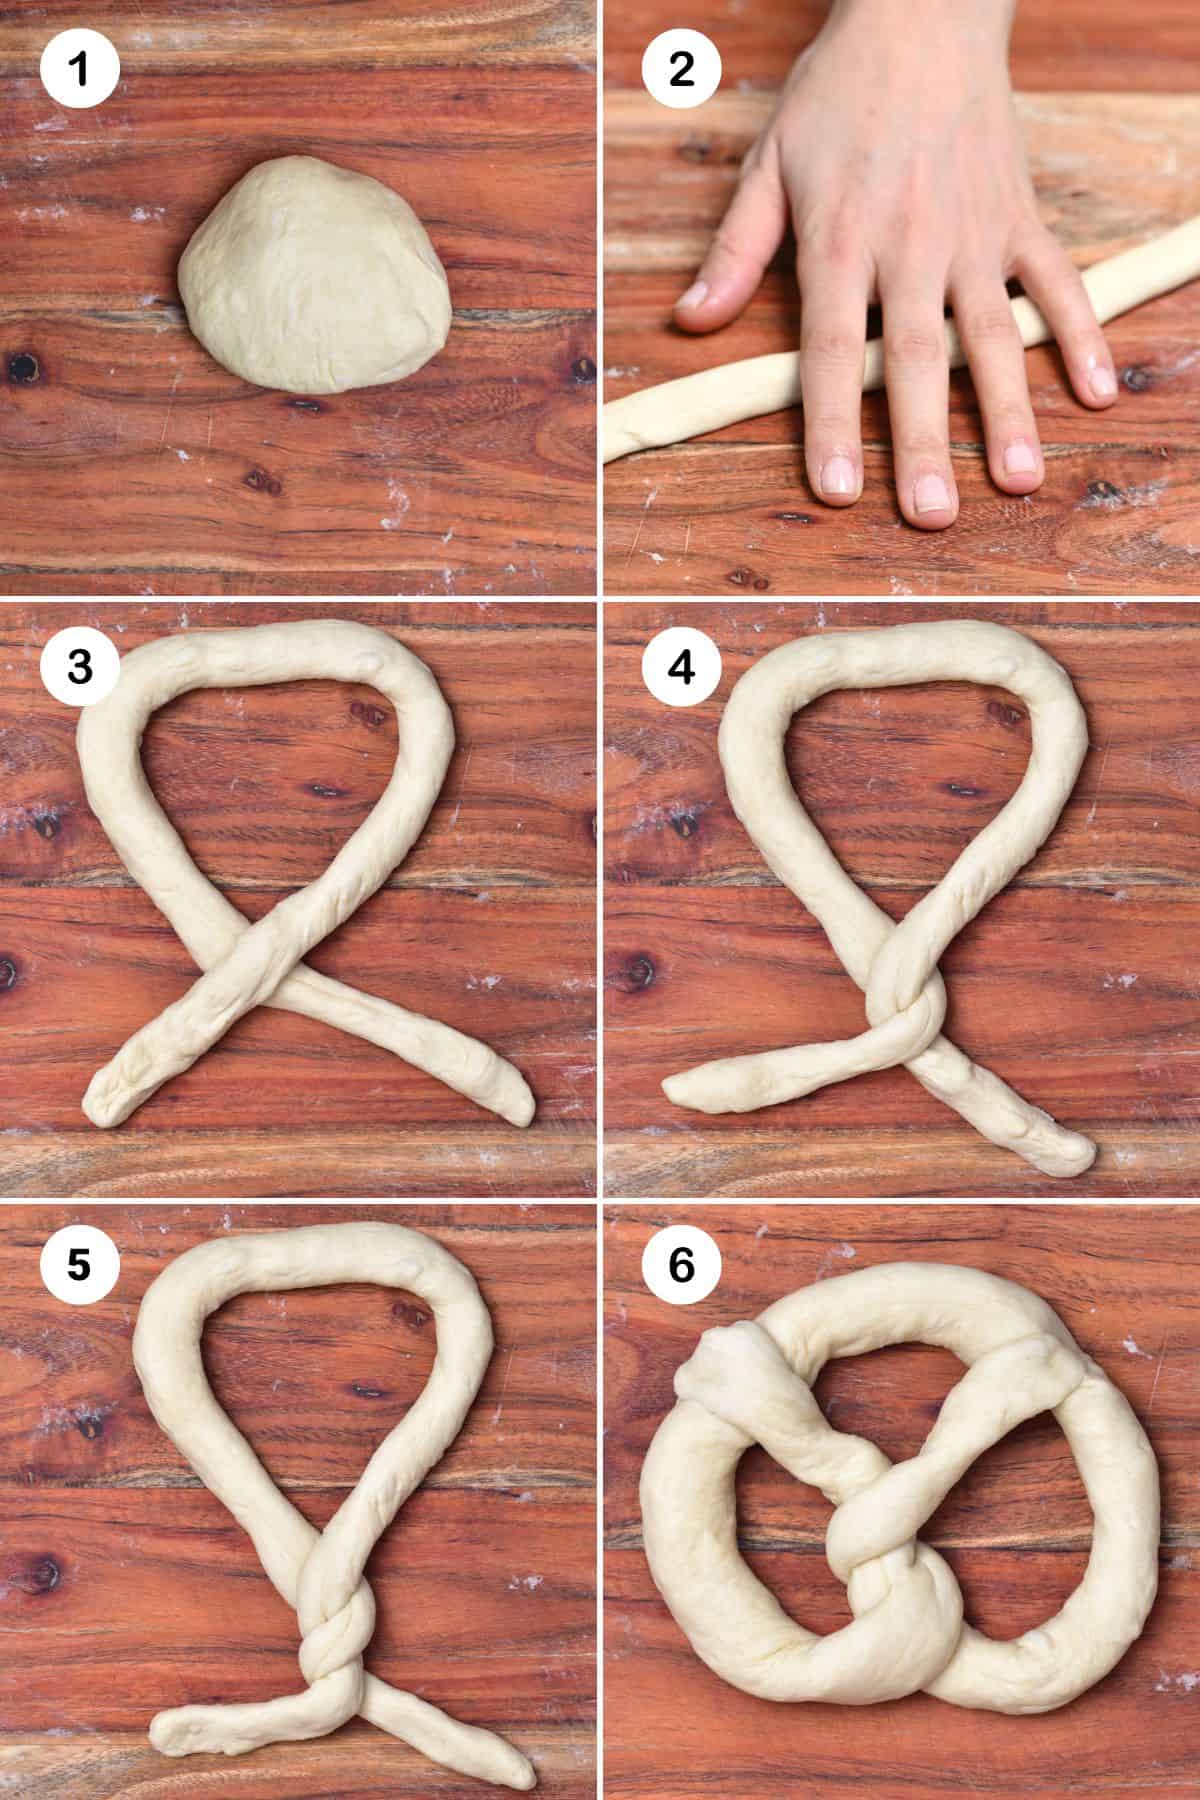 Steps for shaping homemade pretzels